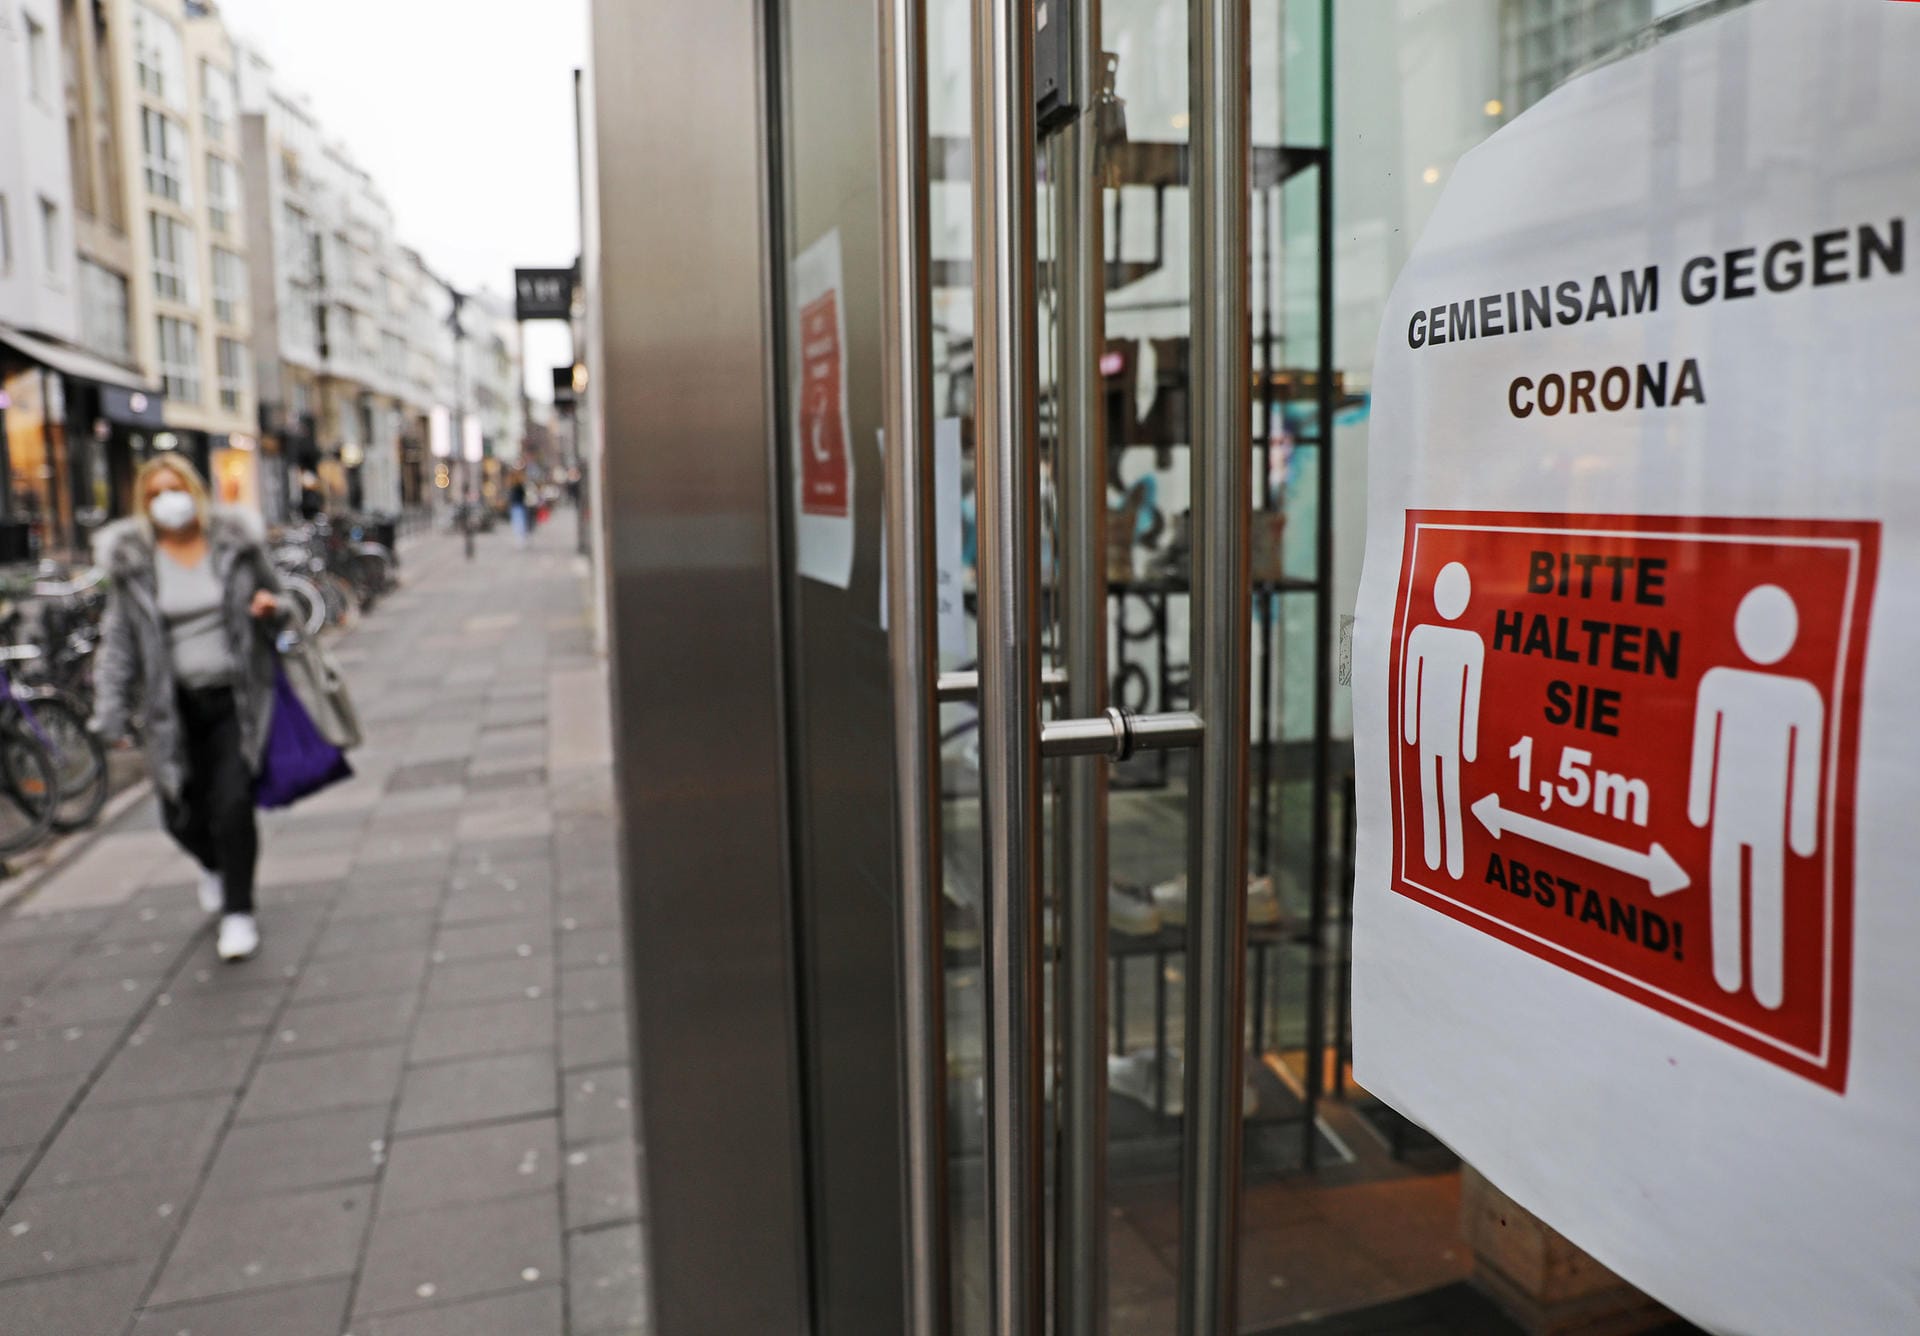 Ein Schild mit der Aufschrift "Gemeinsam gegen Corona" hängt im Eingang eines Geschäftes in einer Einkaufsstraße (Ehrenstraße): Der Lockdown soll die Ausbreitung des Virus verlangsamen.